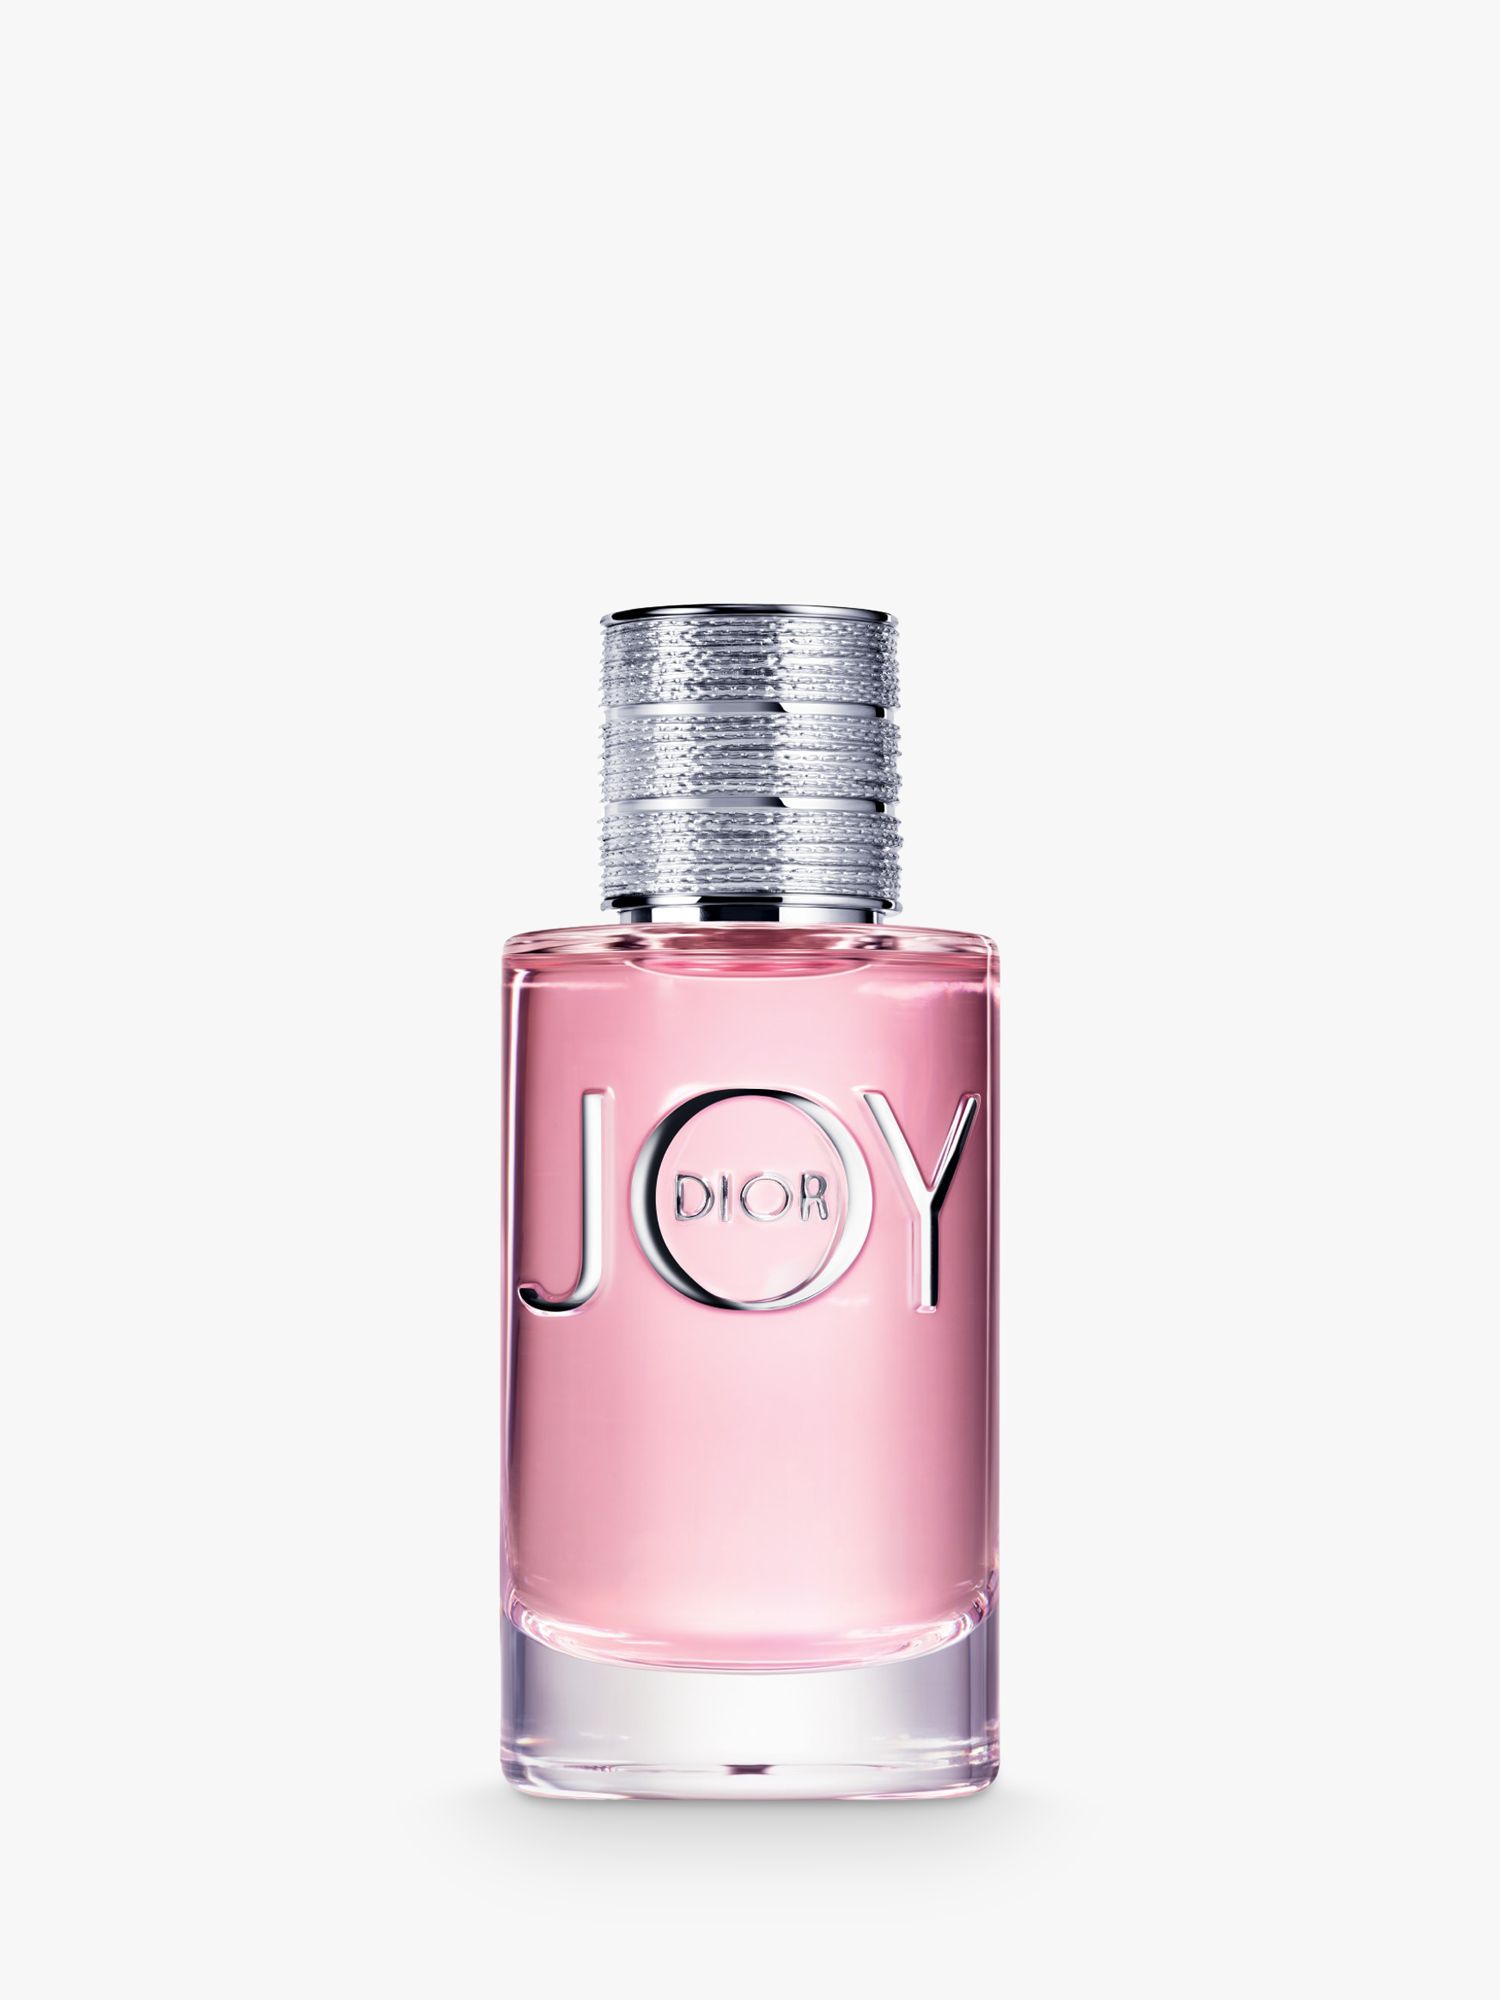 model for joy perfume